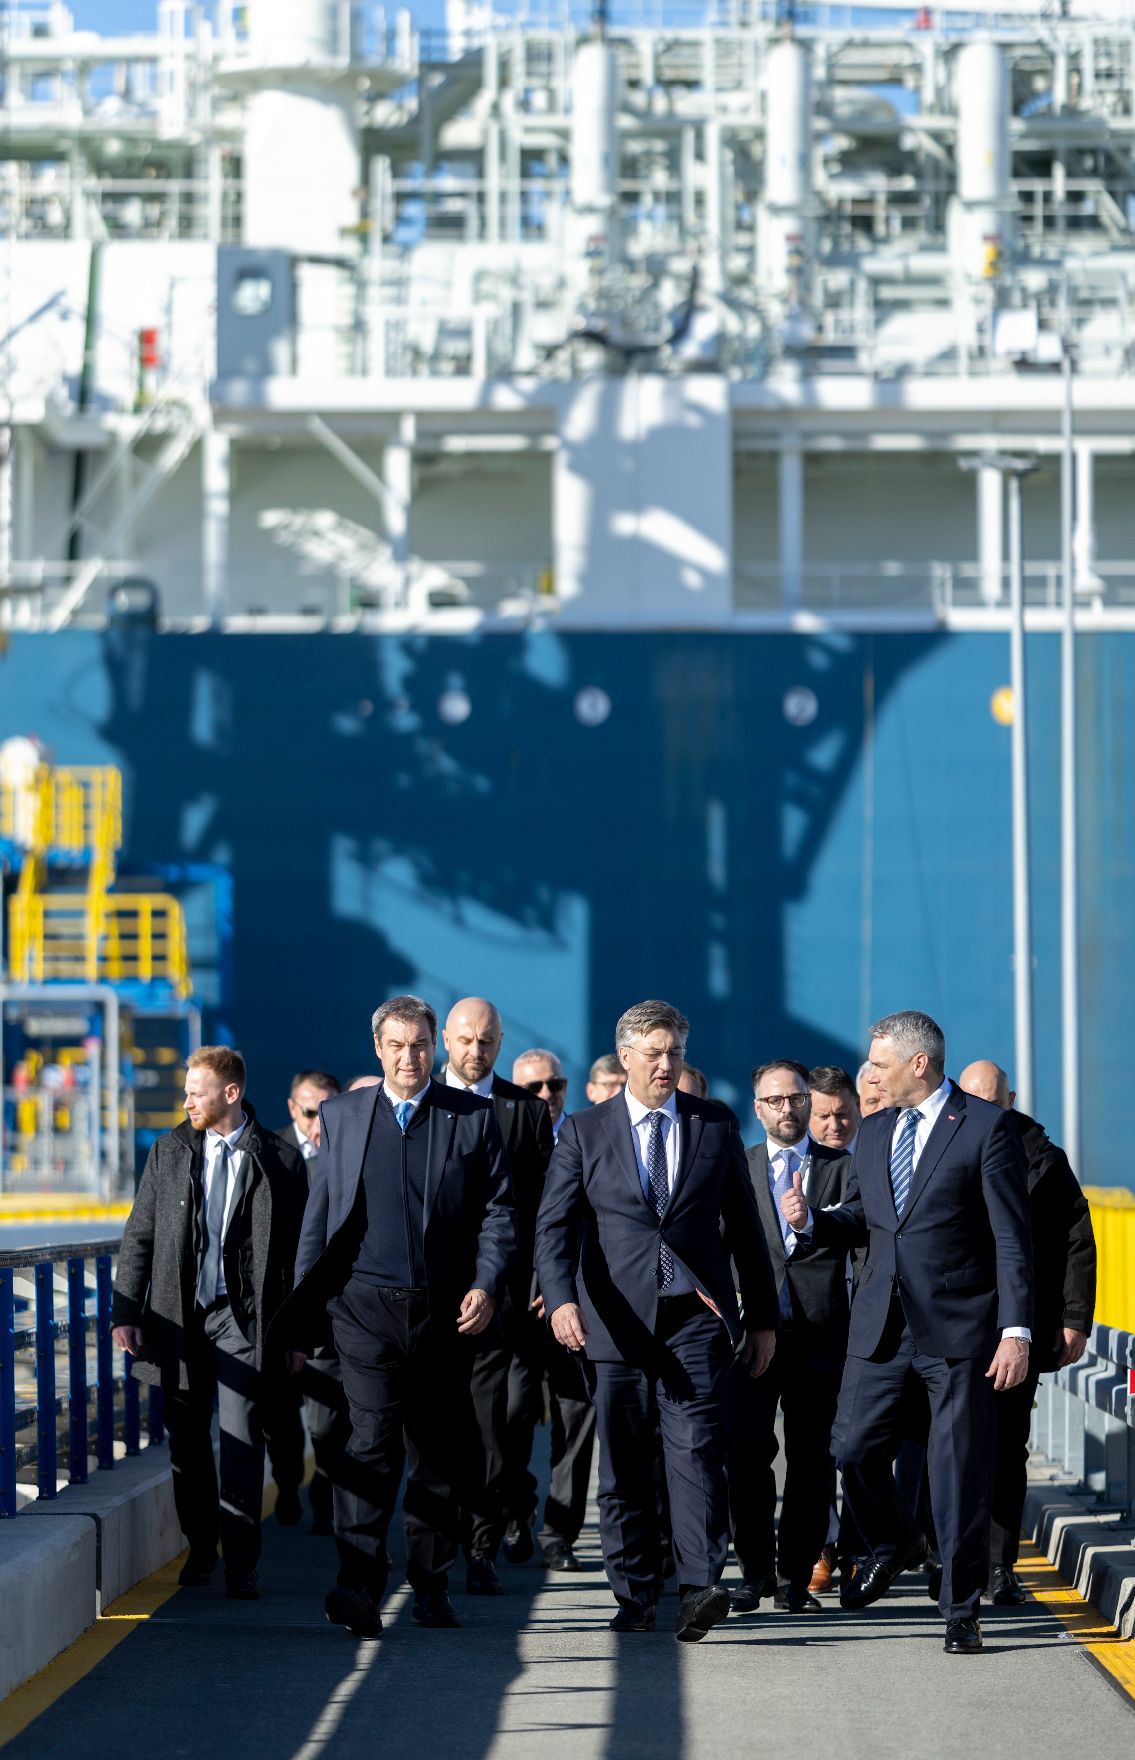 Am 23. November 2022 setzte Bundeskanzler Karl Nehammer (r.) seinen Arbeitsbesuch in Zagreb fort. Im Bild mit dem kroatischen Premierminister Andrej Plenkovic (m.) und dem bayrischen Ministerpräsidenten Markus Söder (l.) beim LNG Terminal.